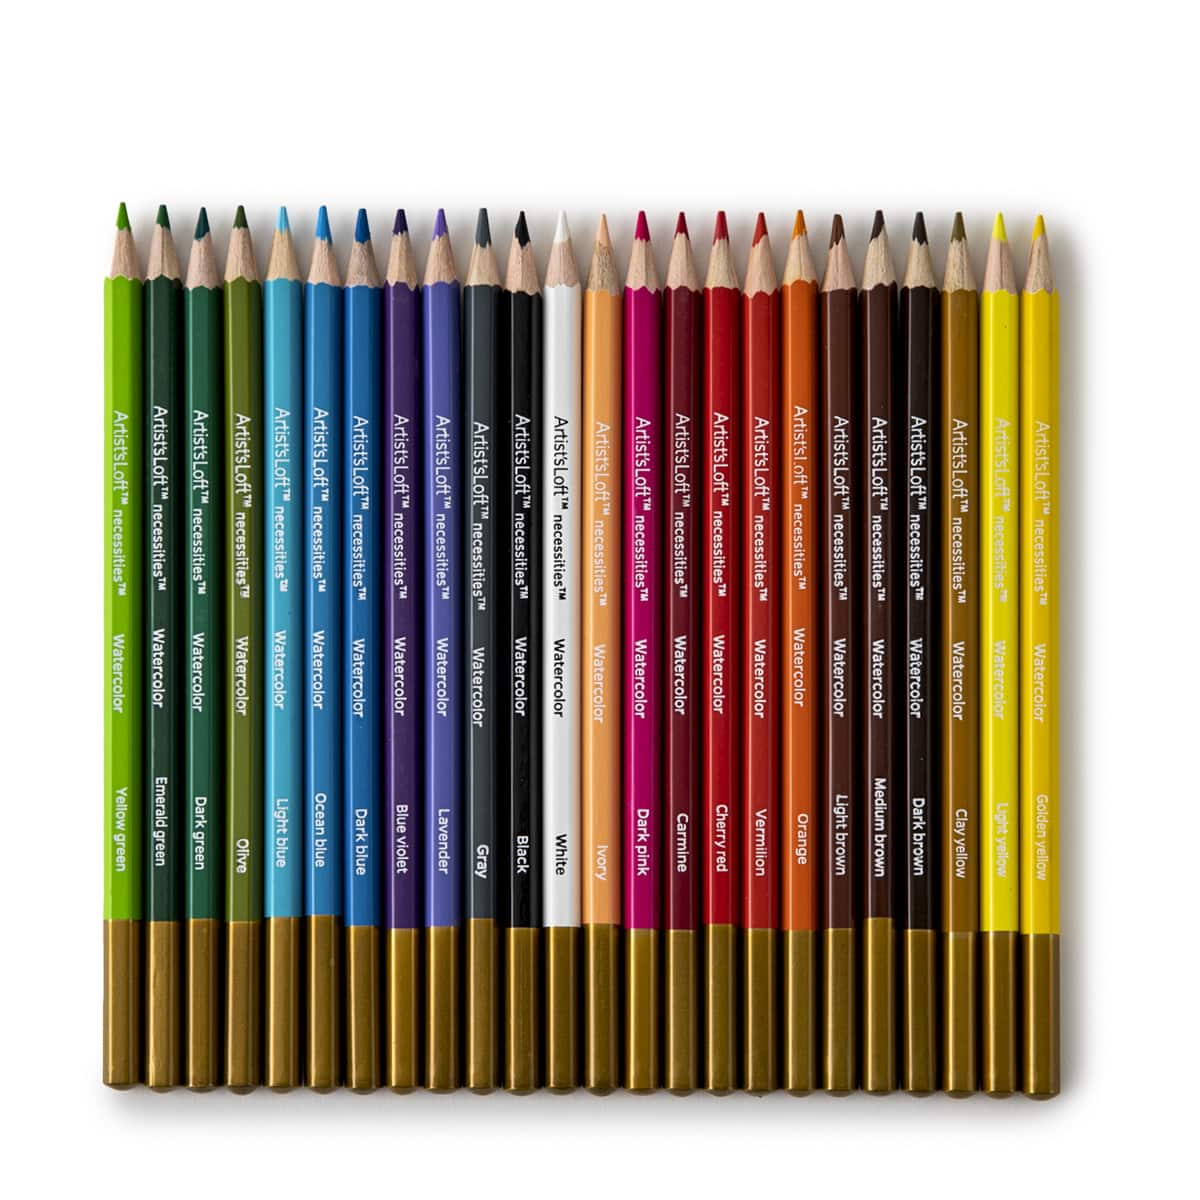 Artlicious Colored Pencils, 50 Colors, Colored Pencils for Kids Color  Pencil Set Colored Pencils Bulk Adult Art Pencils Lapices de Colores Map  Pencils Professional Colored Pencils for Artists - Coupon Codes, Promo